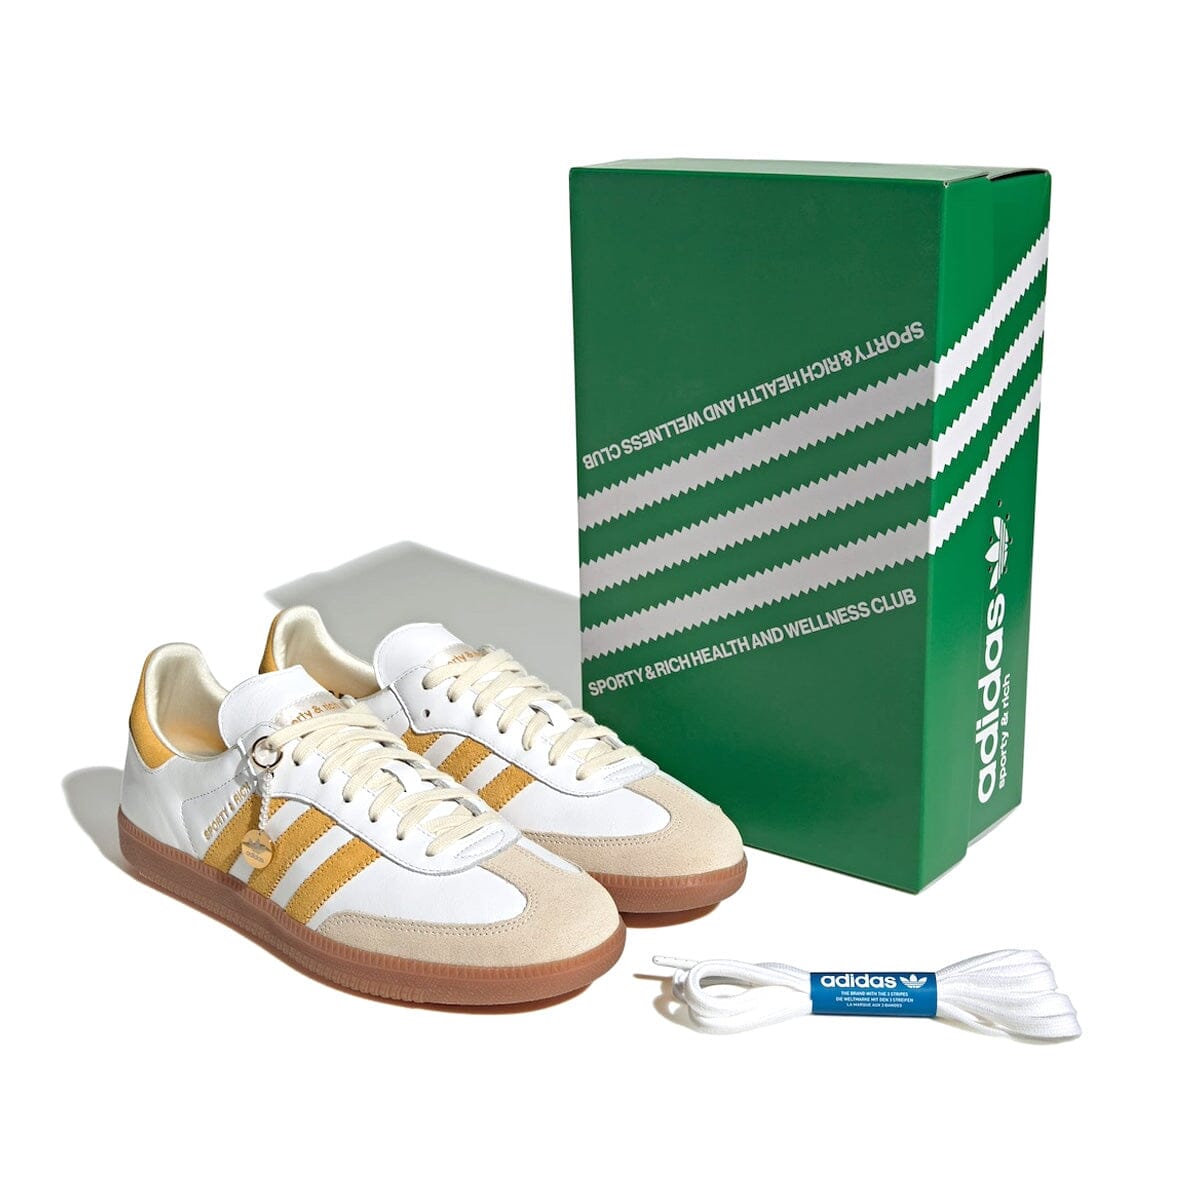 Adidas Samba Sporty & Rich White Bold Gold Samba Blizz Sneakers 